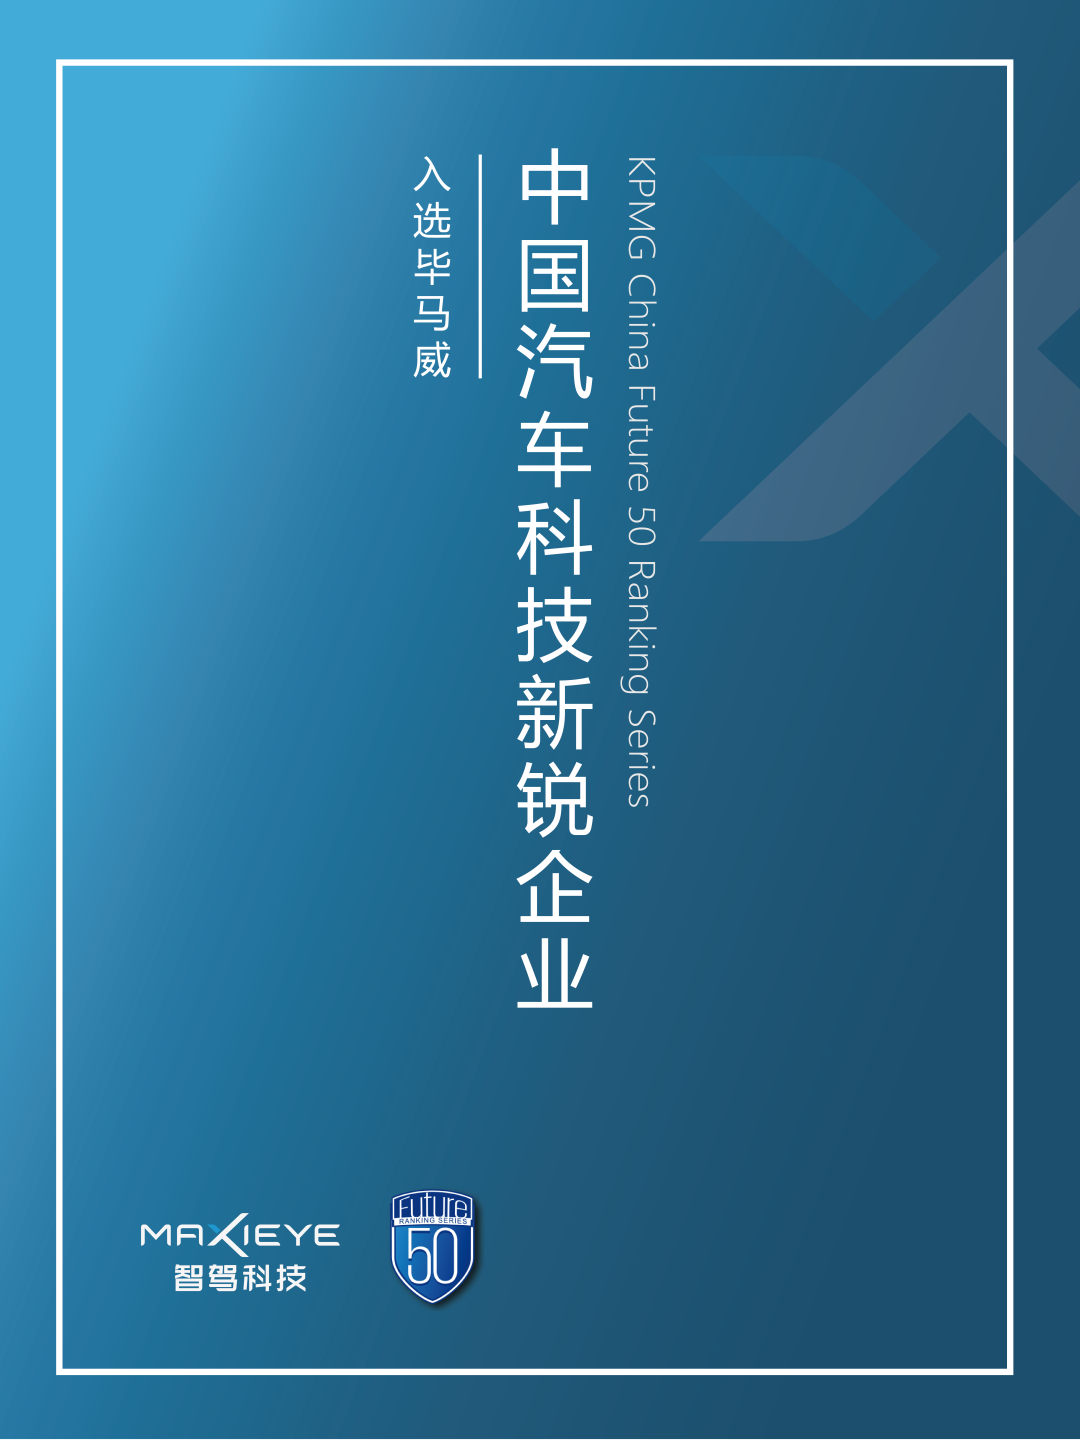 MAXIEYE入选第四届毕马威《中国汽车科技新锐企业榜单》(图1)